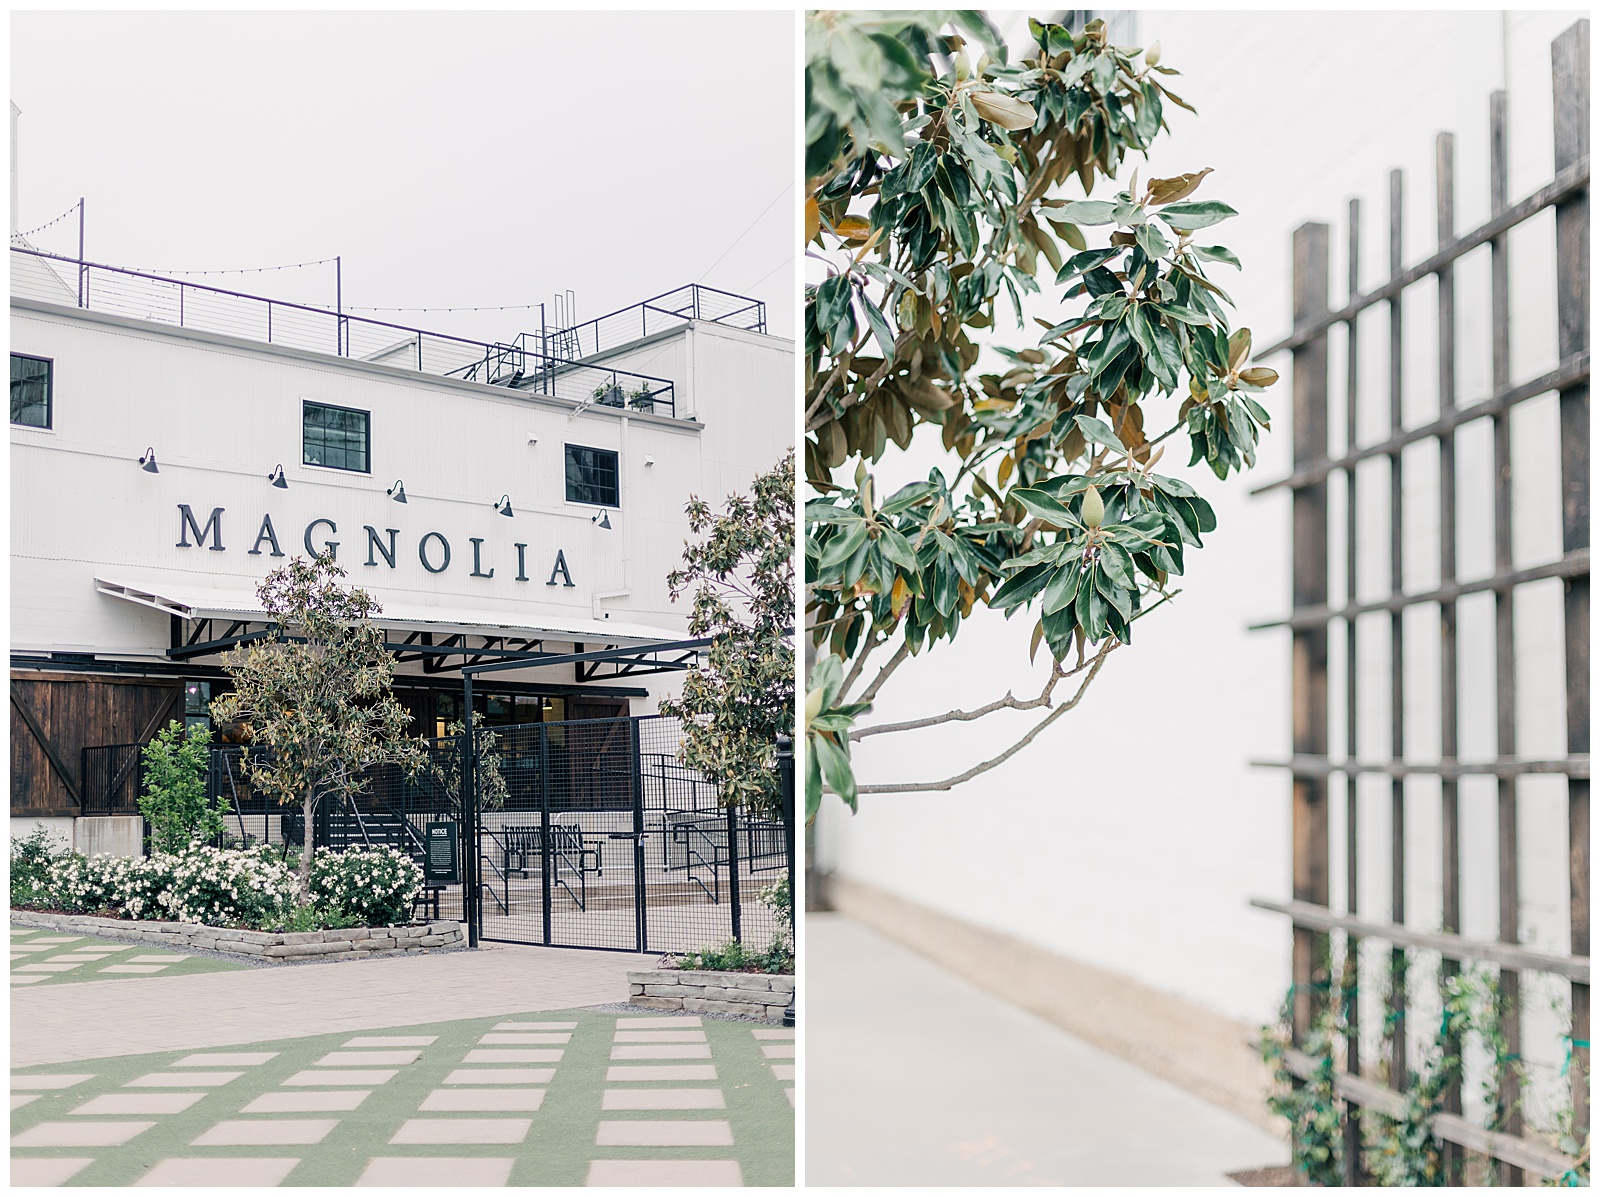 Magnolia in Waco, TX